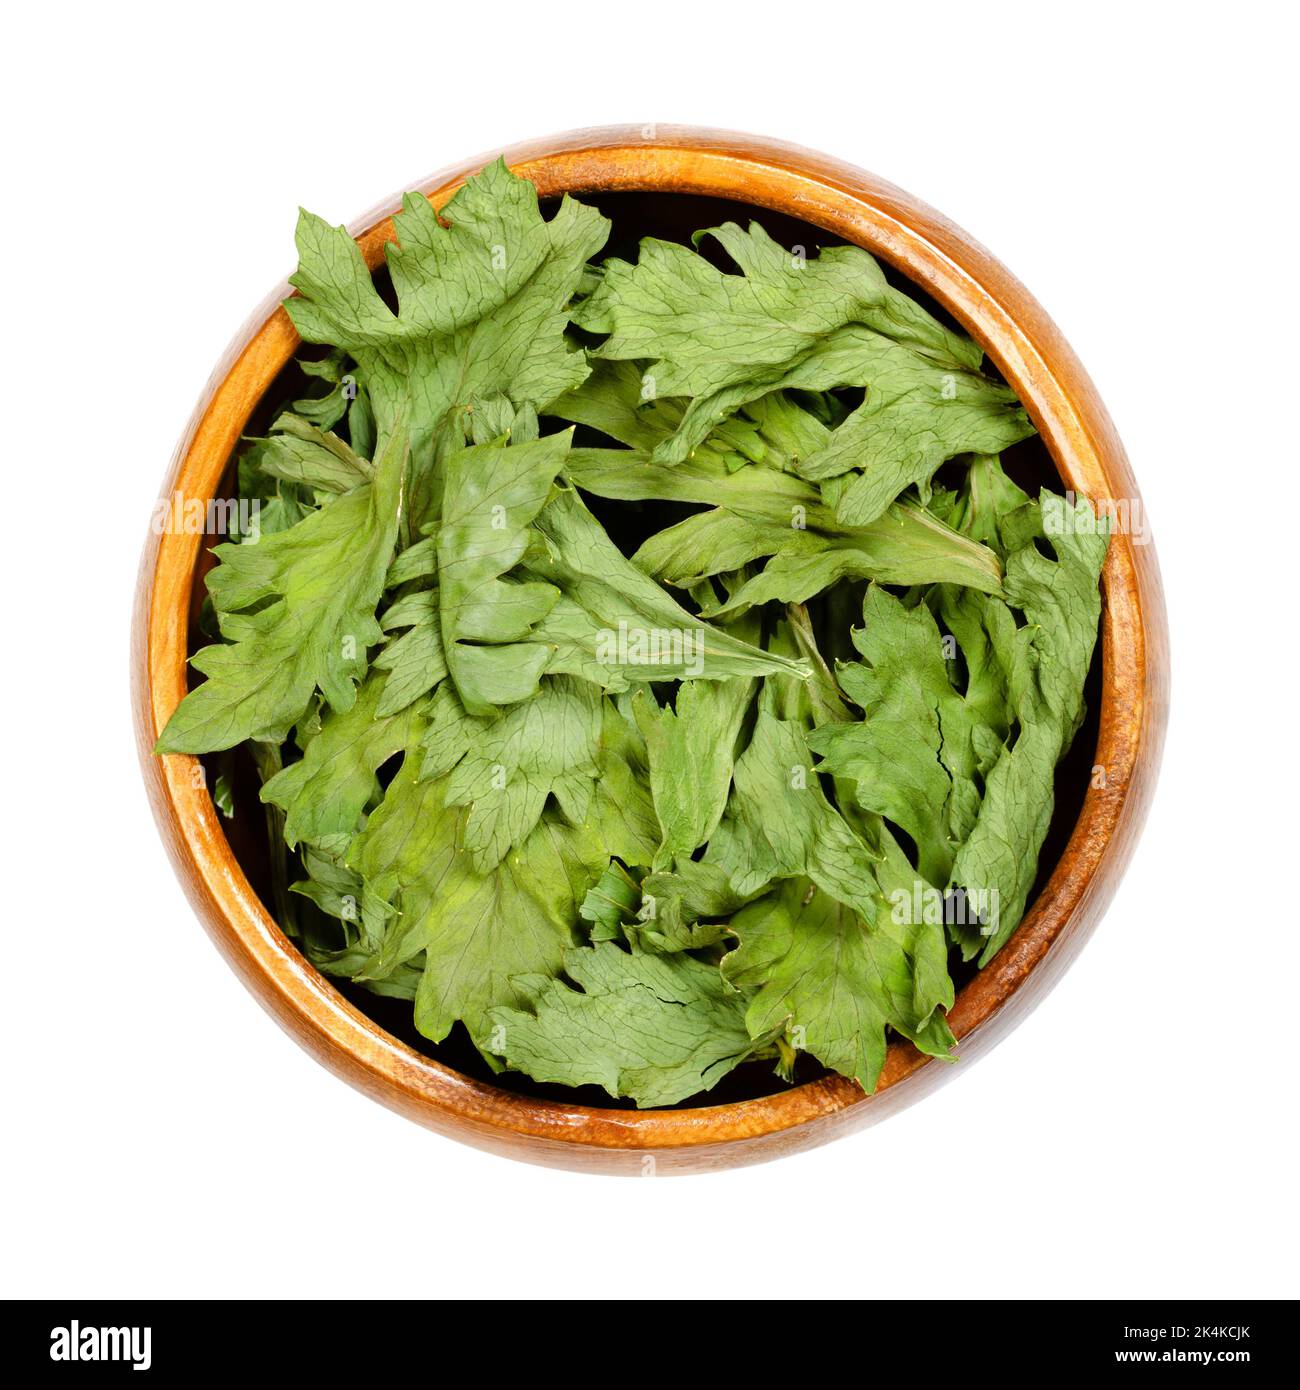 Sellerie, dehydrierte grüne Blätter, in einer Holzschüssel. Apium graveolens var. graveolens, Wurzelgemüse, hauptsächlich für seinen Stiel angebaut. Stockfoto